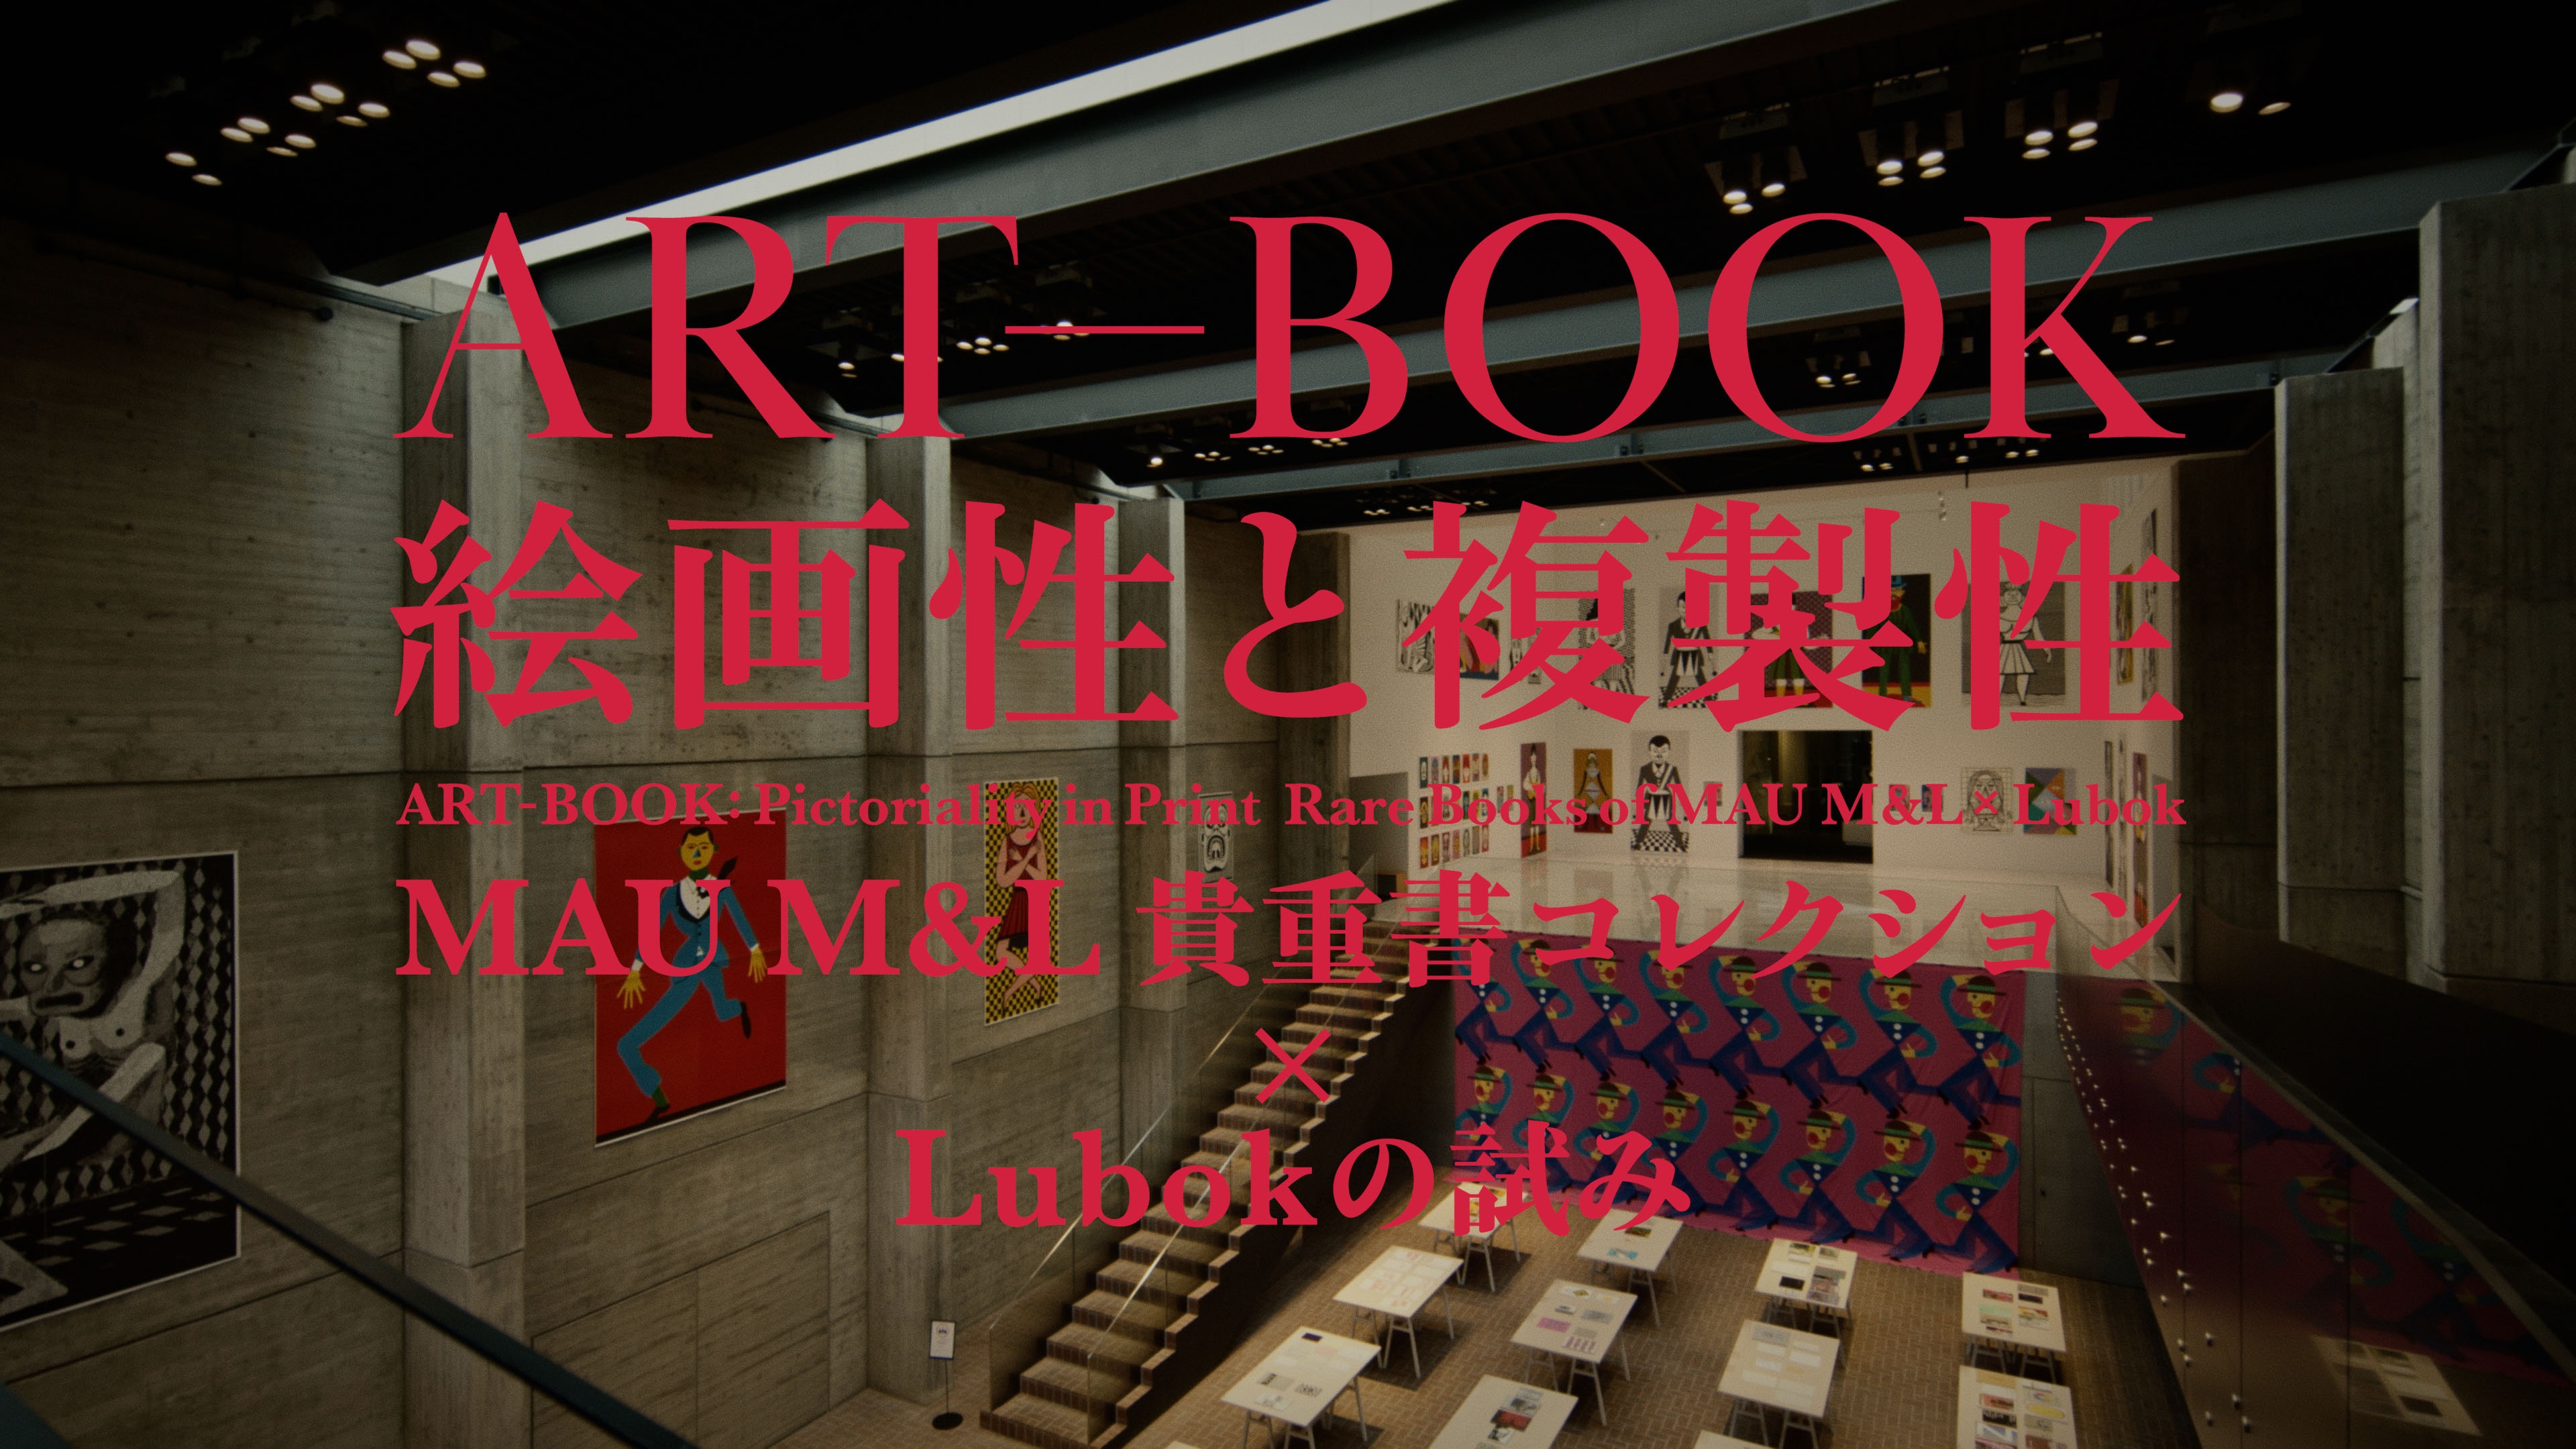 武蔵野美術大学 美術館・図書館「ART-BOOK: 絵画性と複製性——MAU M&L貴重書コレクション ✕ Lubokの試み」<i>ART-BOOK: Pictoriality in Print Rare Books of MAU M&L ✕ Lubok</i>, Musashino Art University Museum&Library